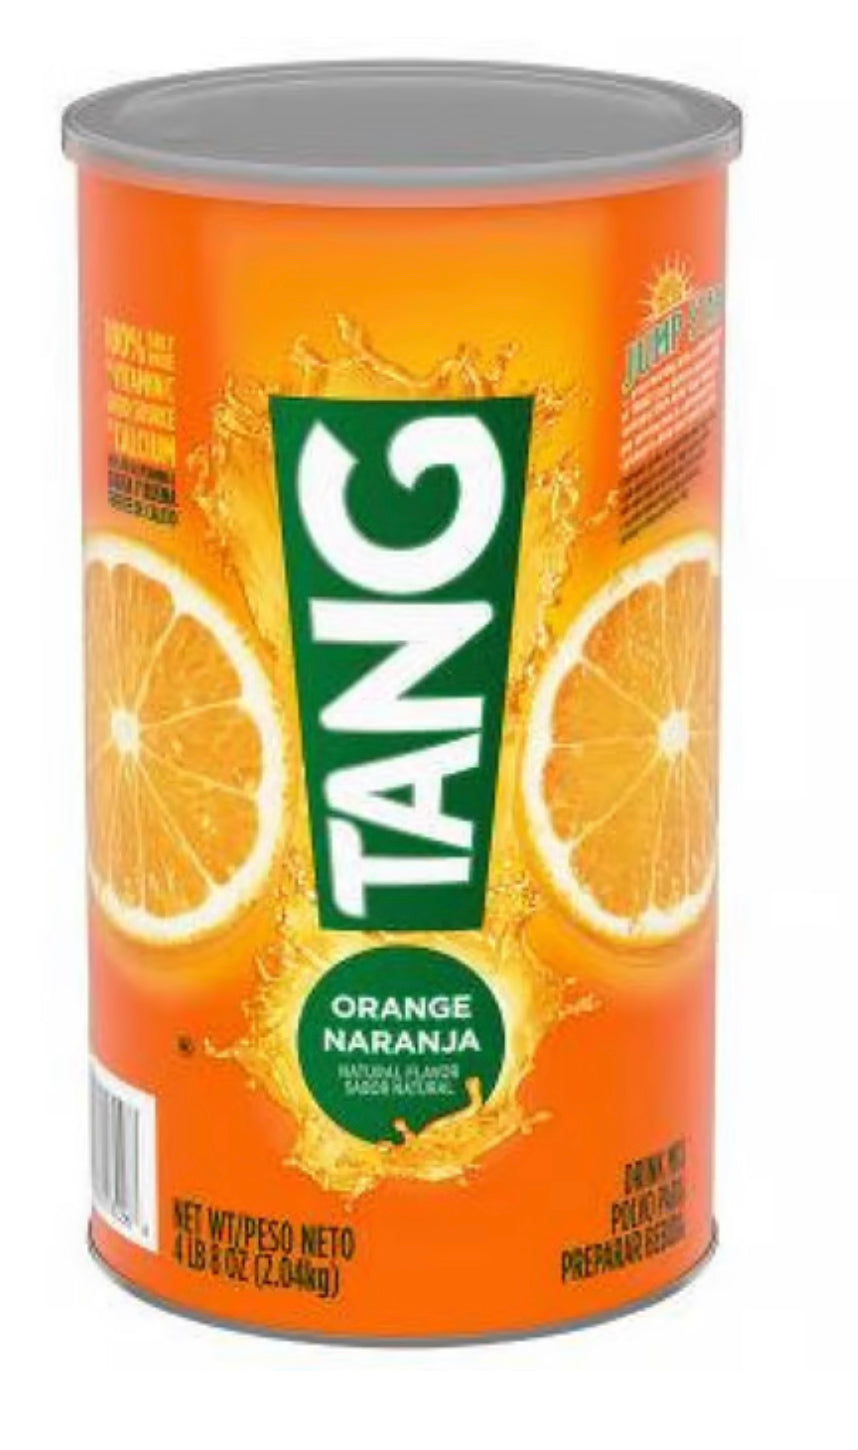 Tang Orange Naranja